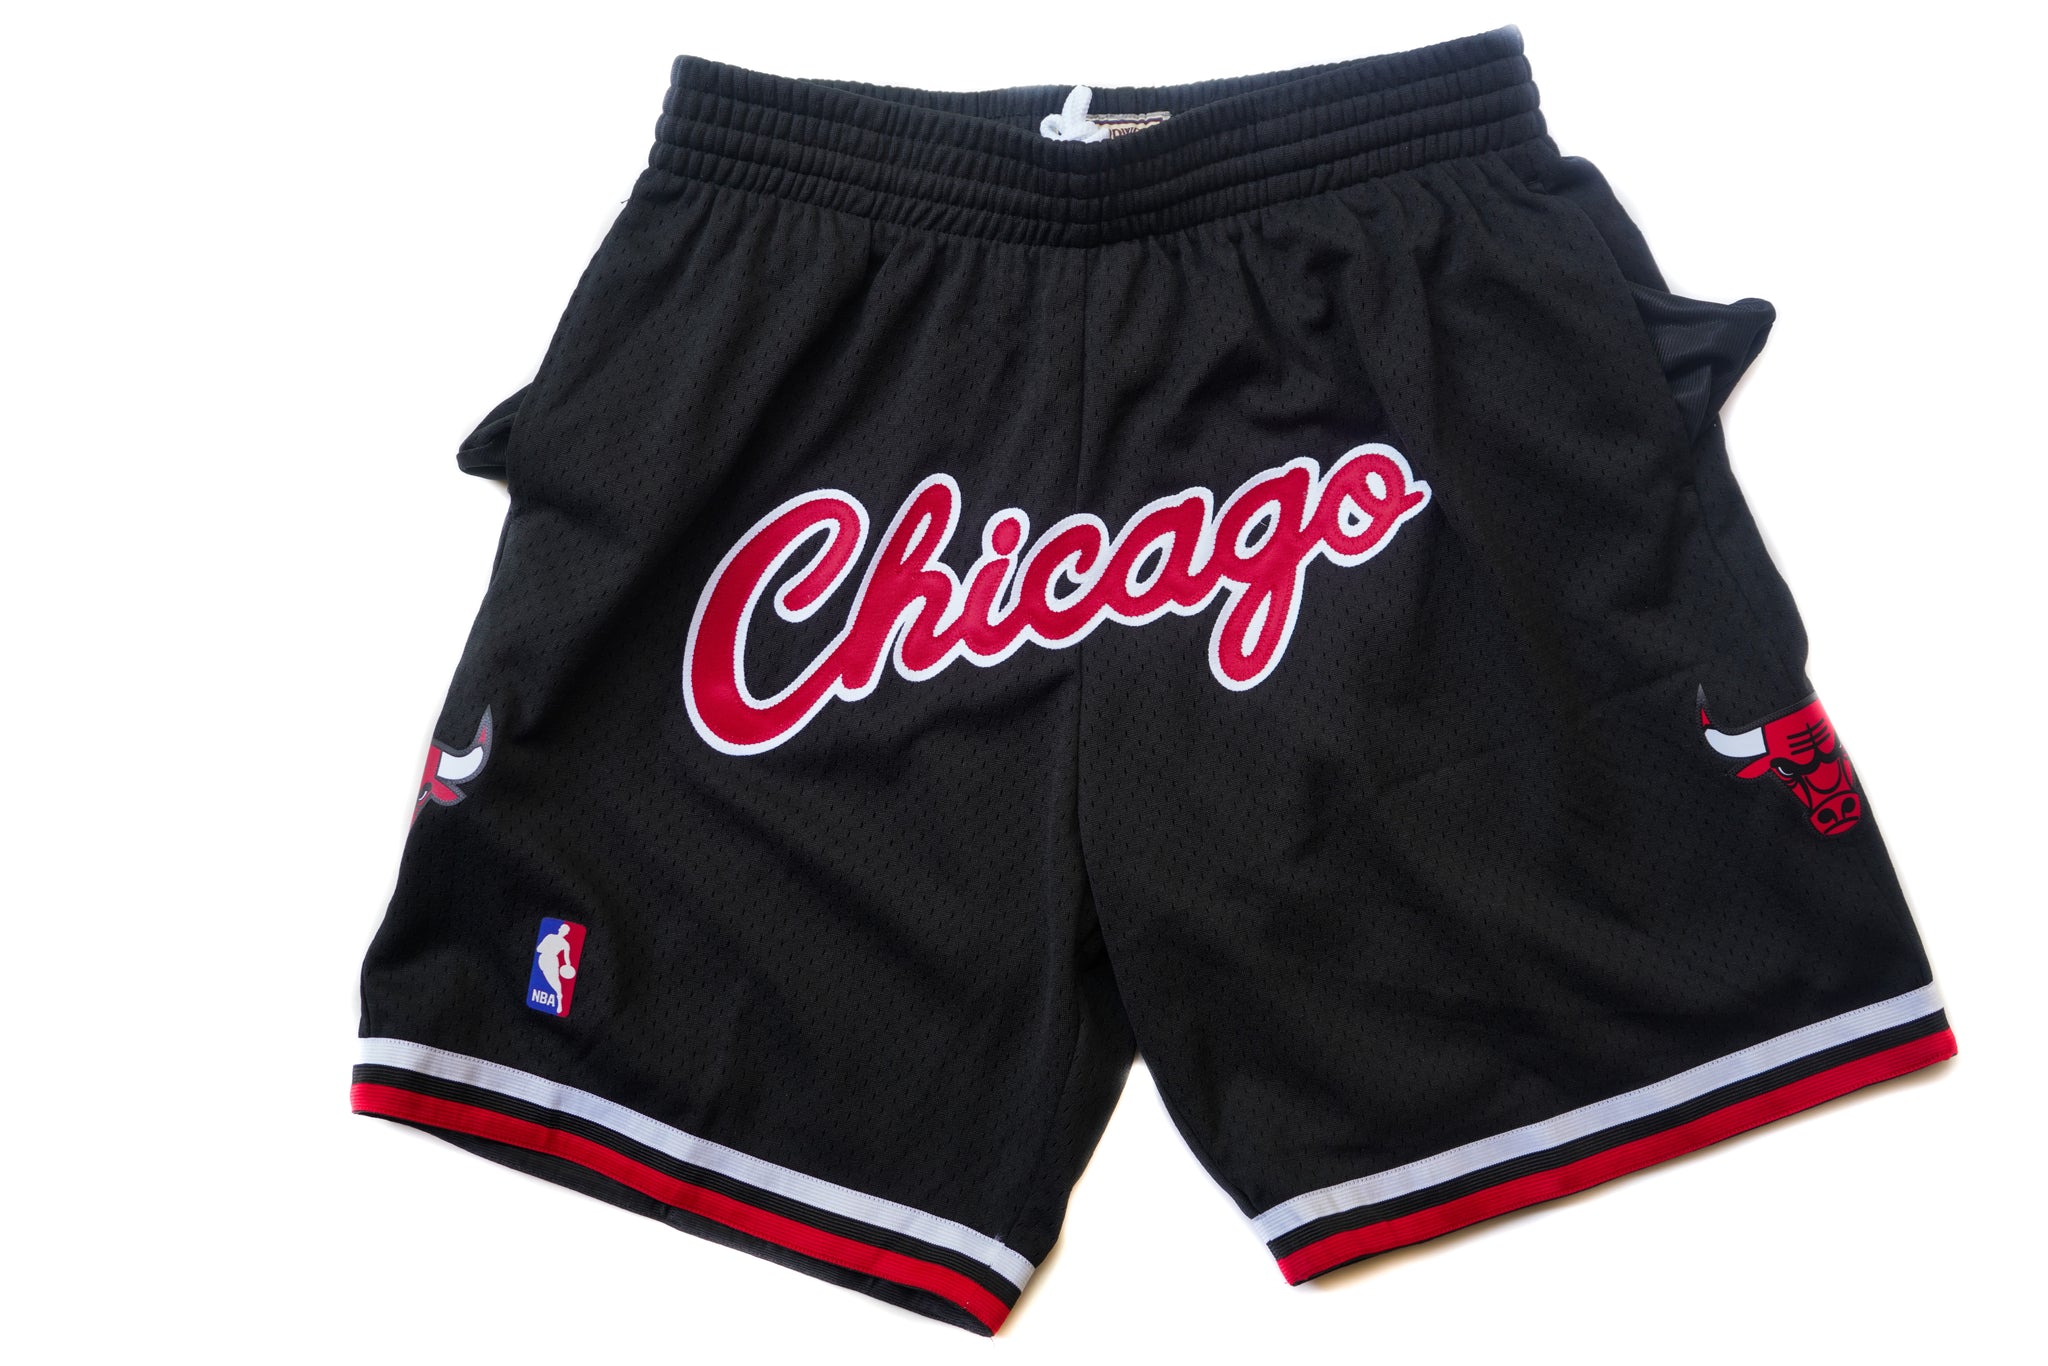 Mitchell & Ness Chicago Bulls 1997-1998 "CHICAGO" Swingman Shorts